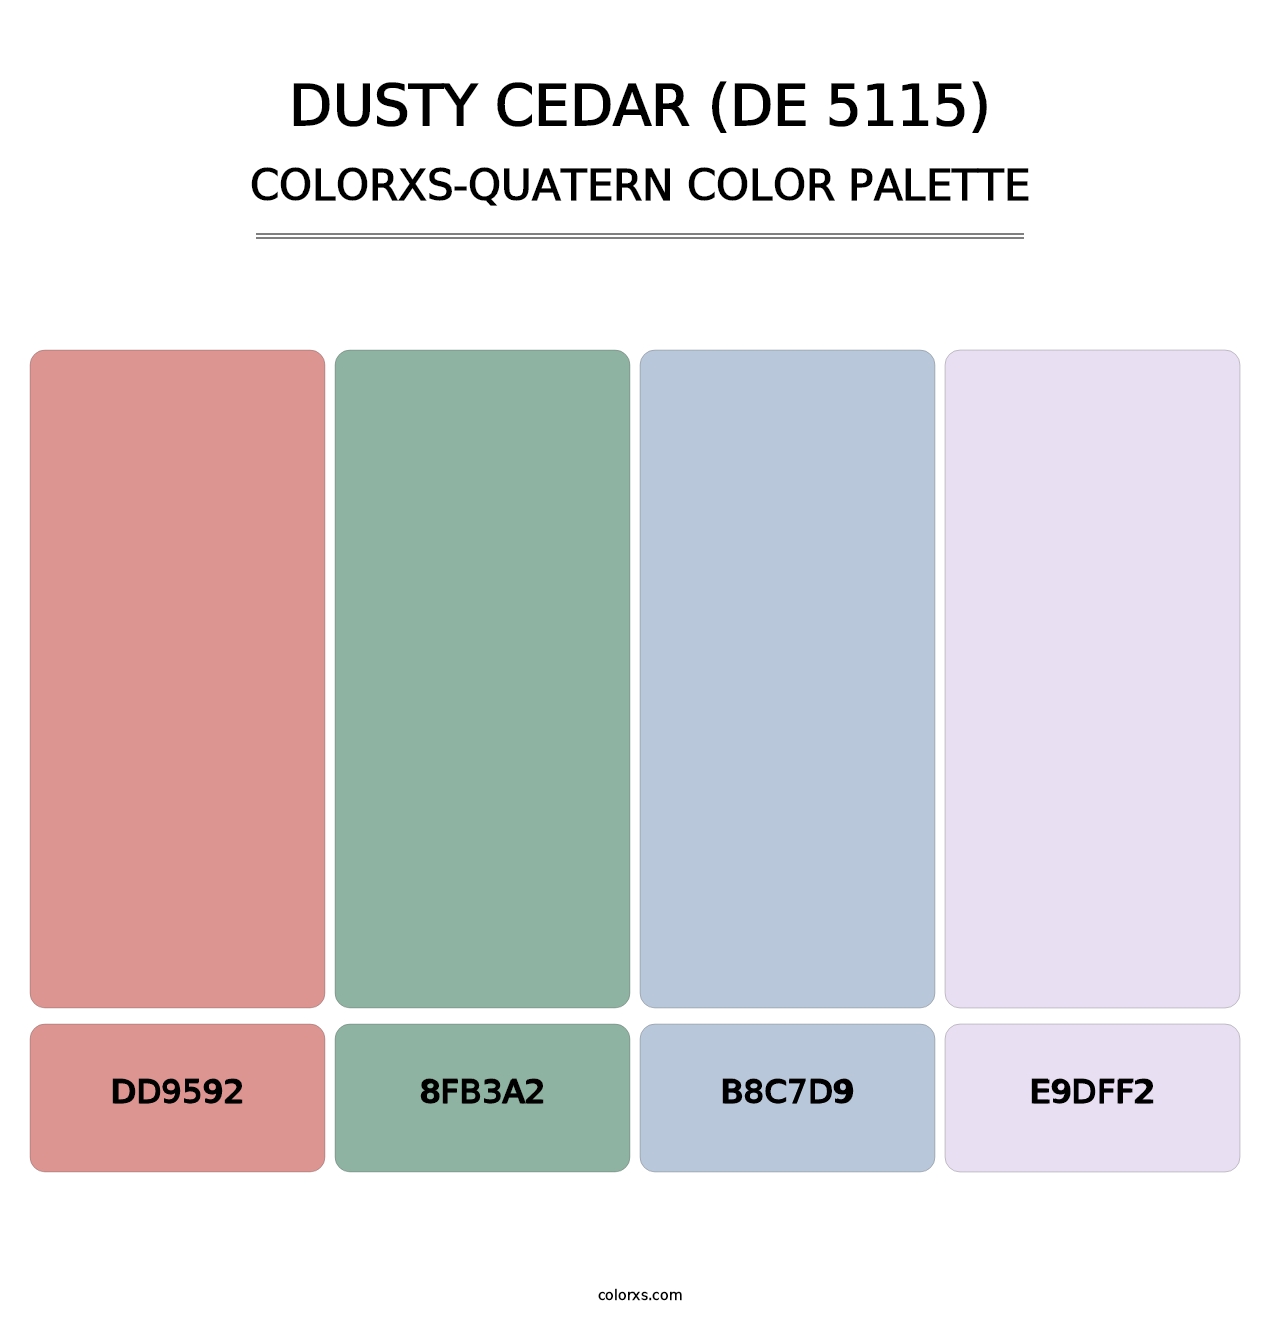 Dusty Cedar (DE 5115) - Colorxs Quatern Palette